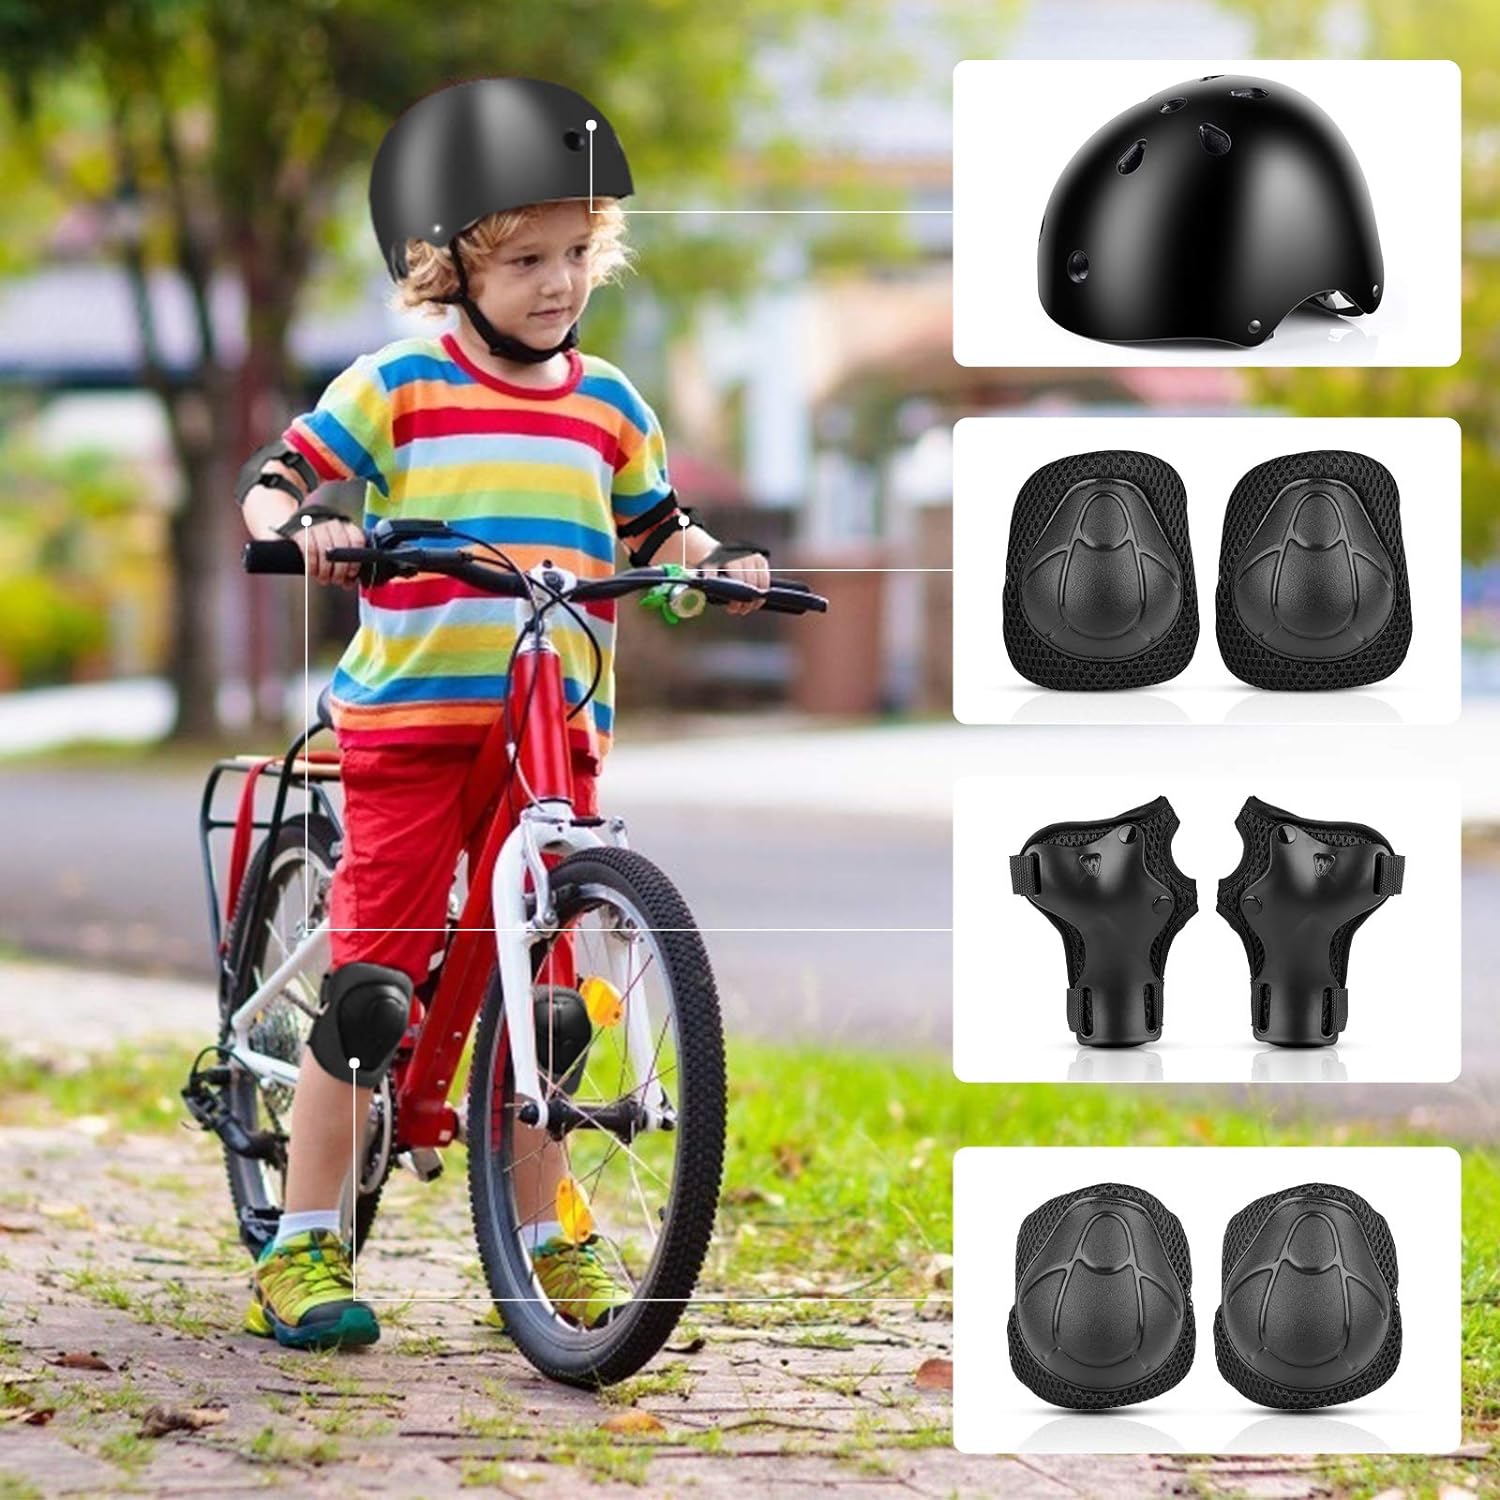 Kit de protection roller complet genoullière coudière et protège poignets  pour enfant Taille S